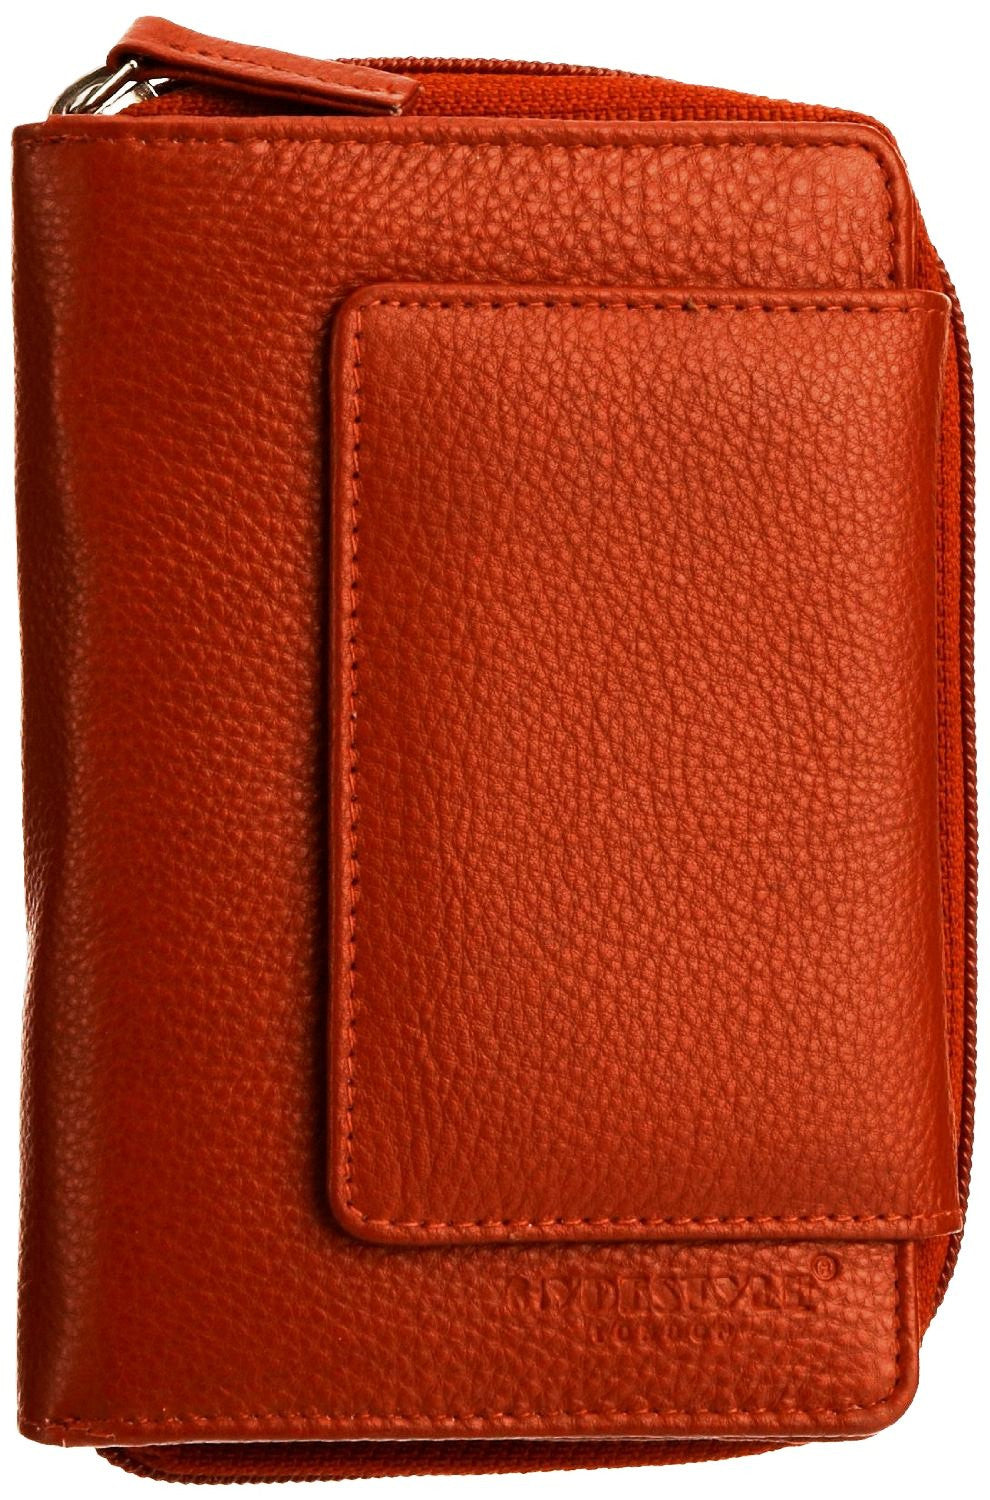 Pratico - women leather flap wallet #LW02 Red